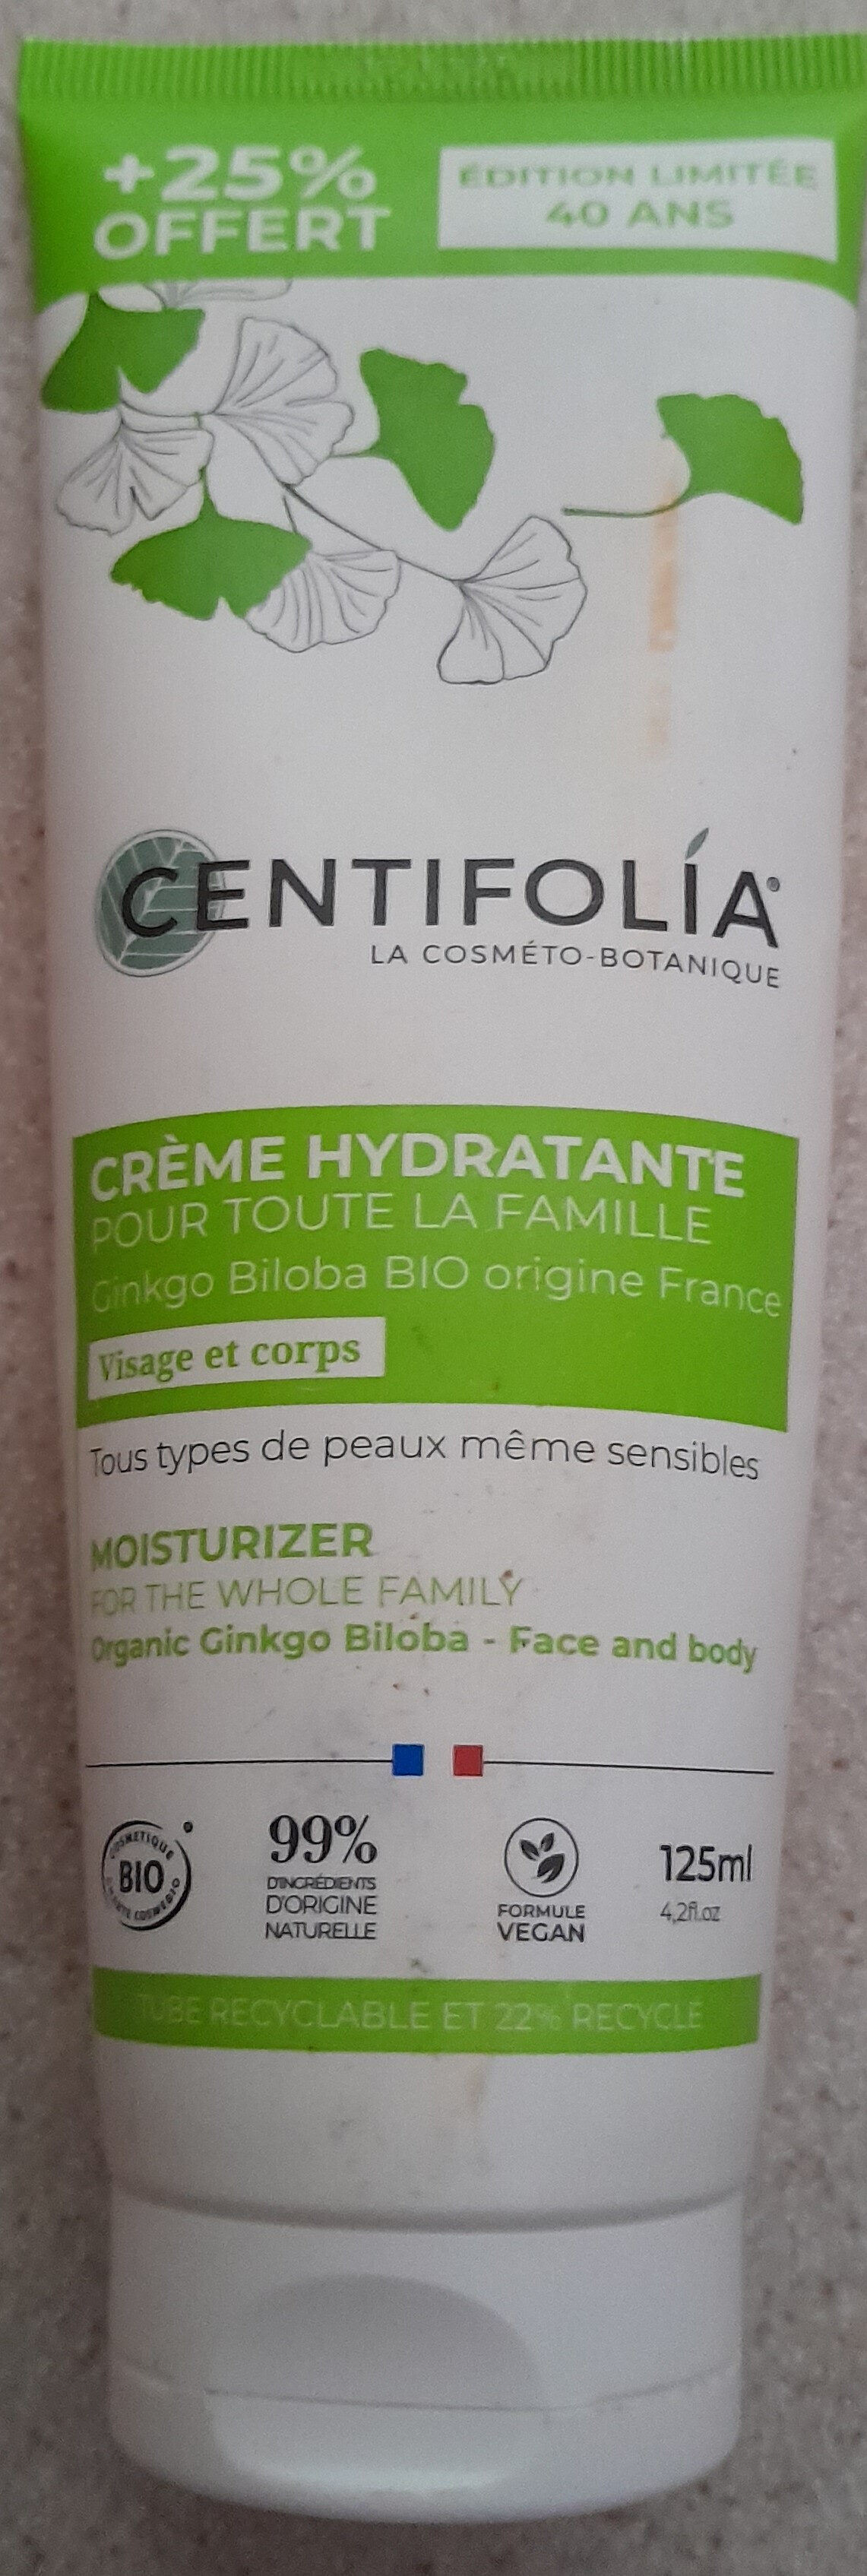 crème hydratante pour toute la famille - Produkt - fr